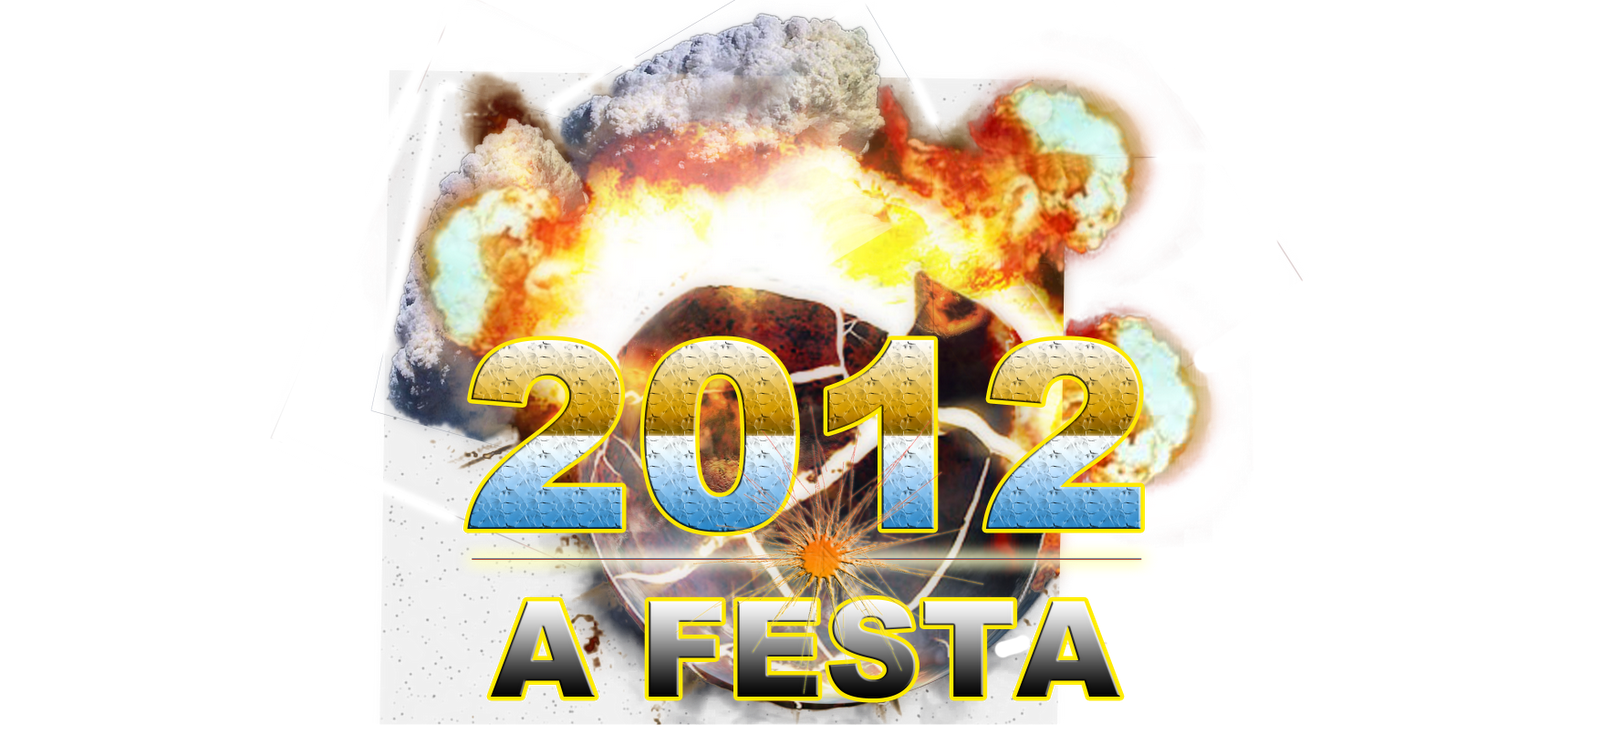 2012 A FESTA